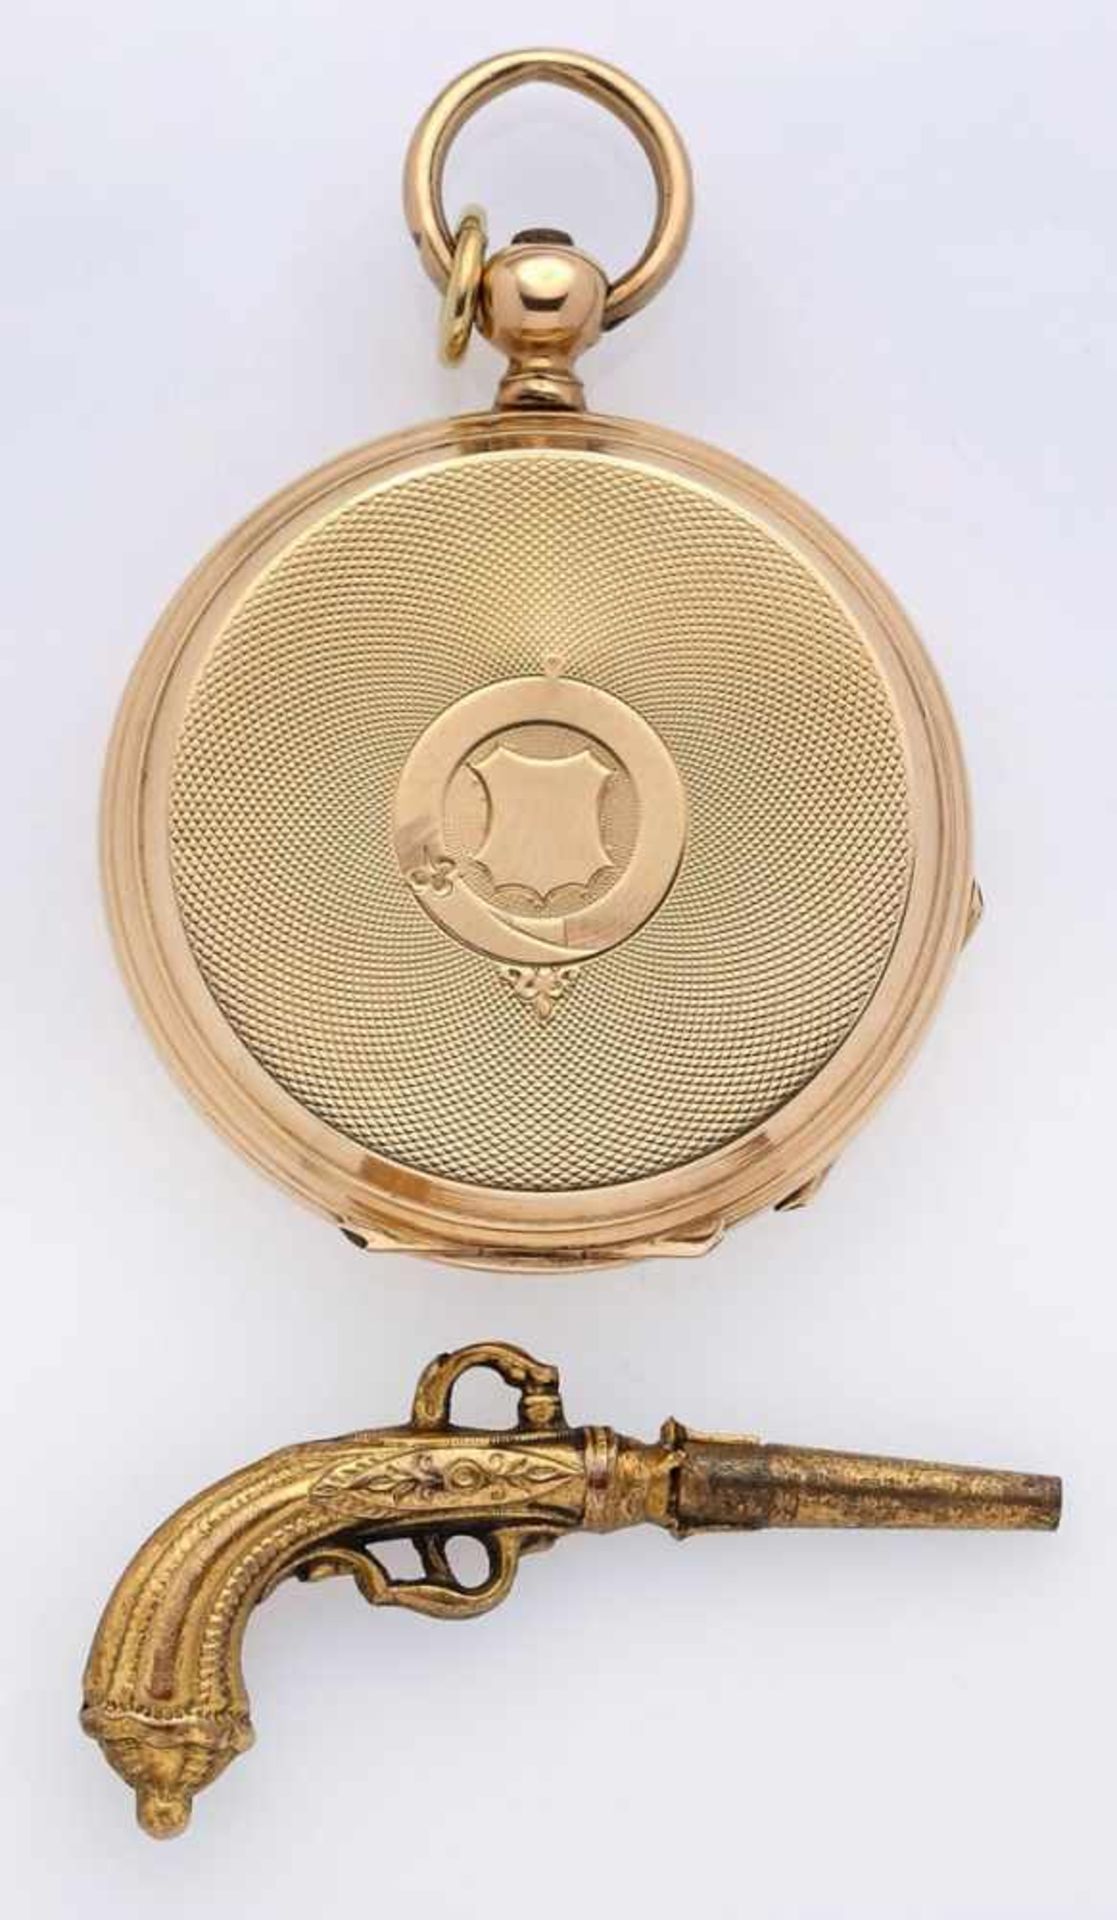 DamentaschenuhrPateck u. Co., Schweiz um 1900 Guillochiertes Gehäuse u. 3 Deckel in n 14 kt GG, 2 - Image 2 of 2